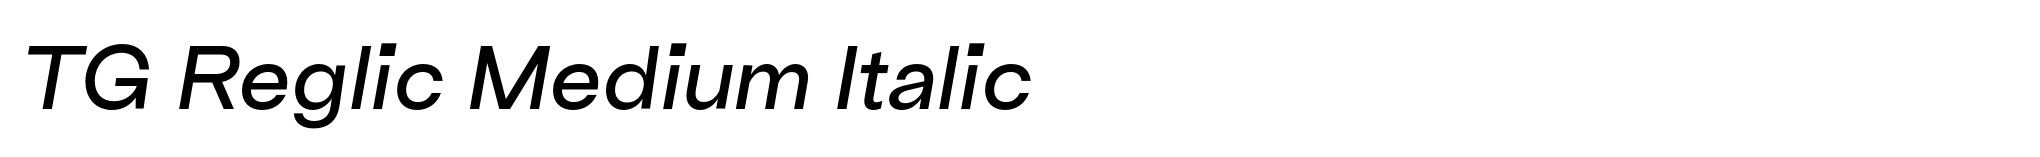 TG Reglic Medium Italic image